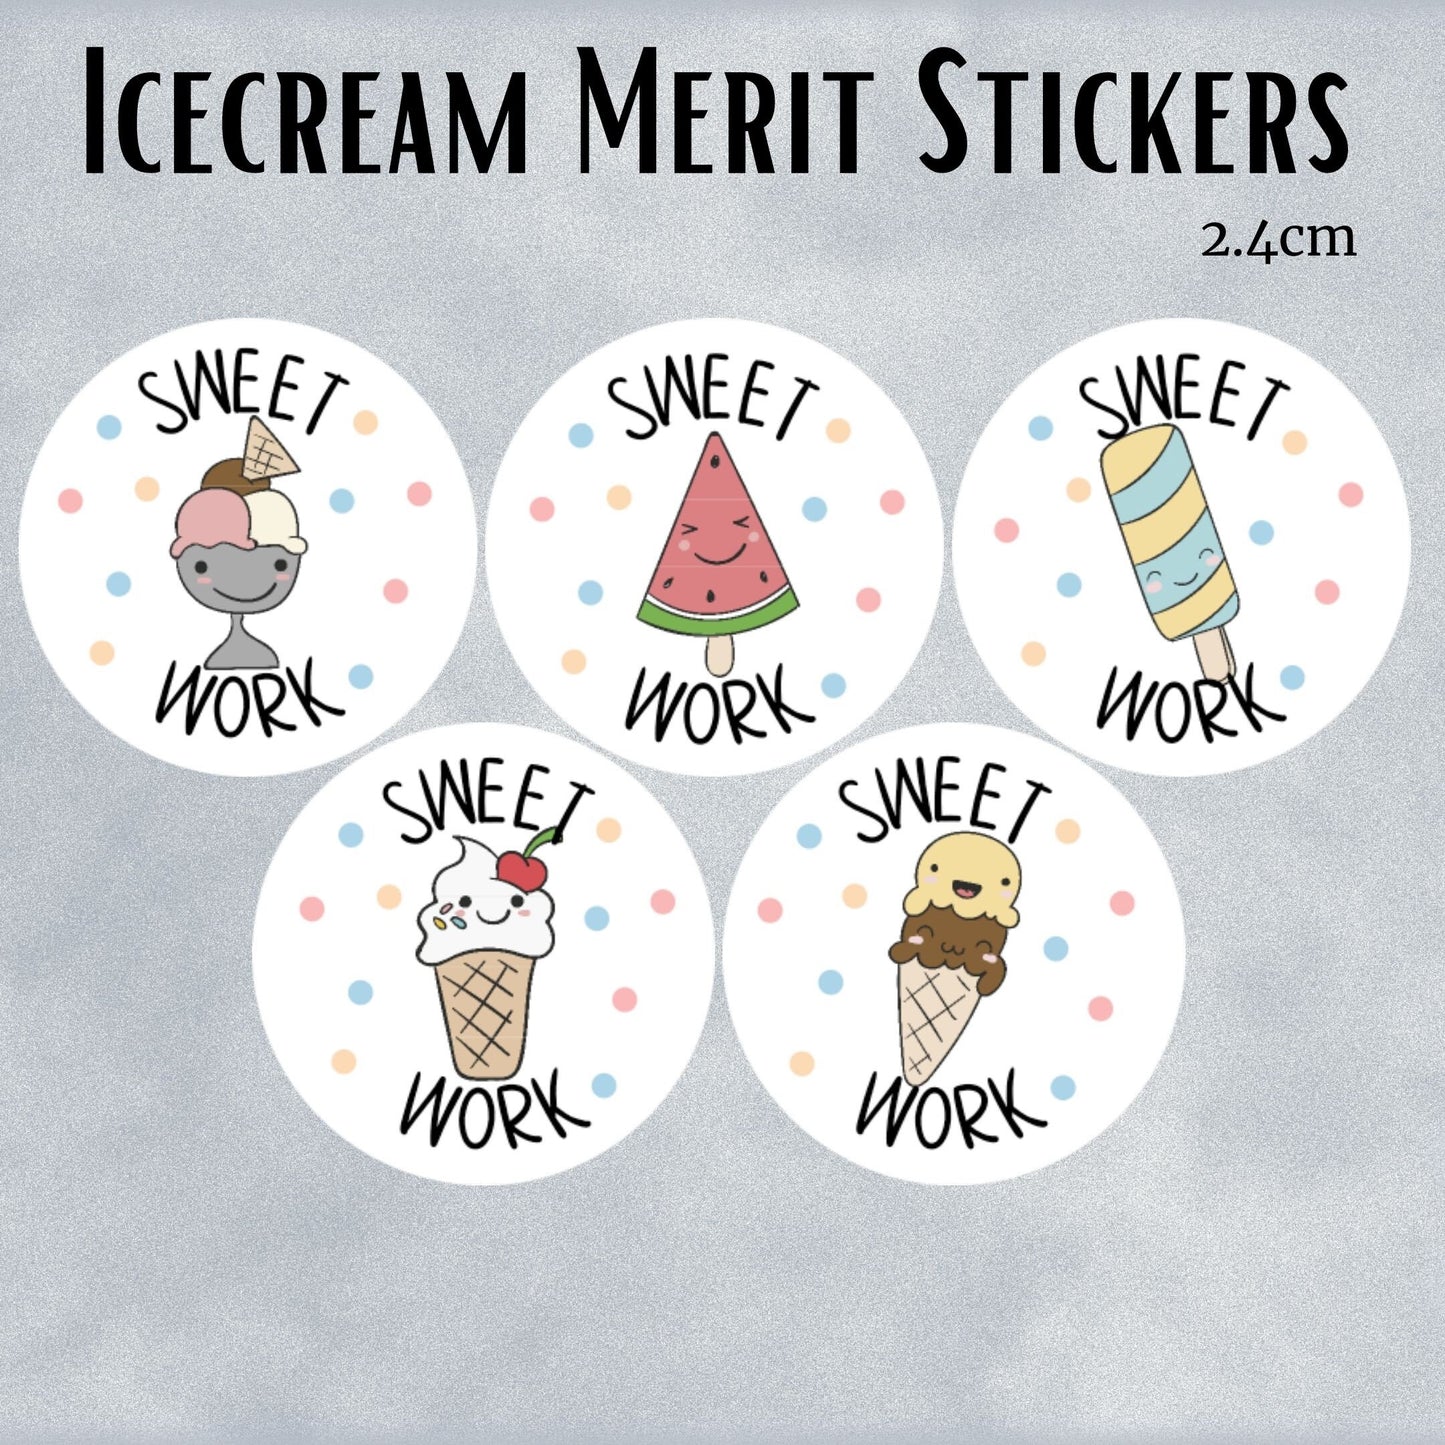 Ice Cream General Merit Stickers